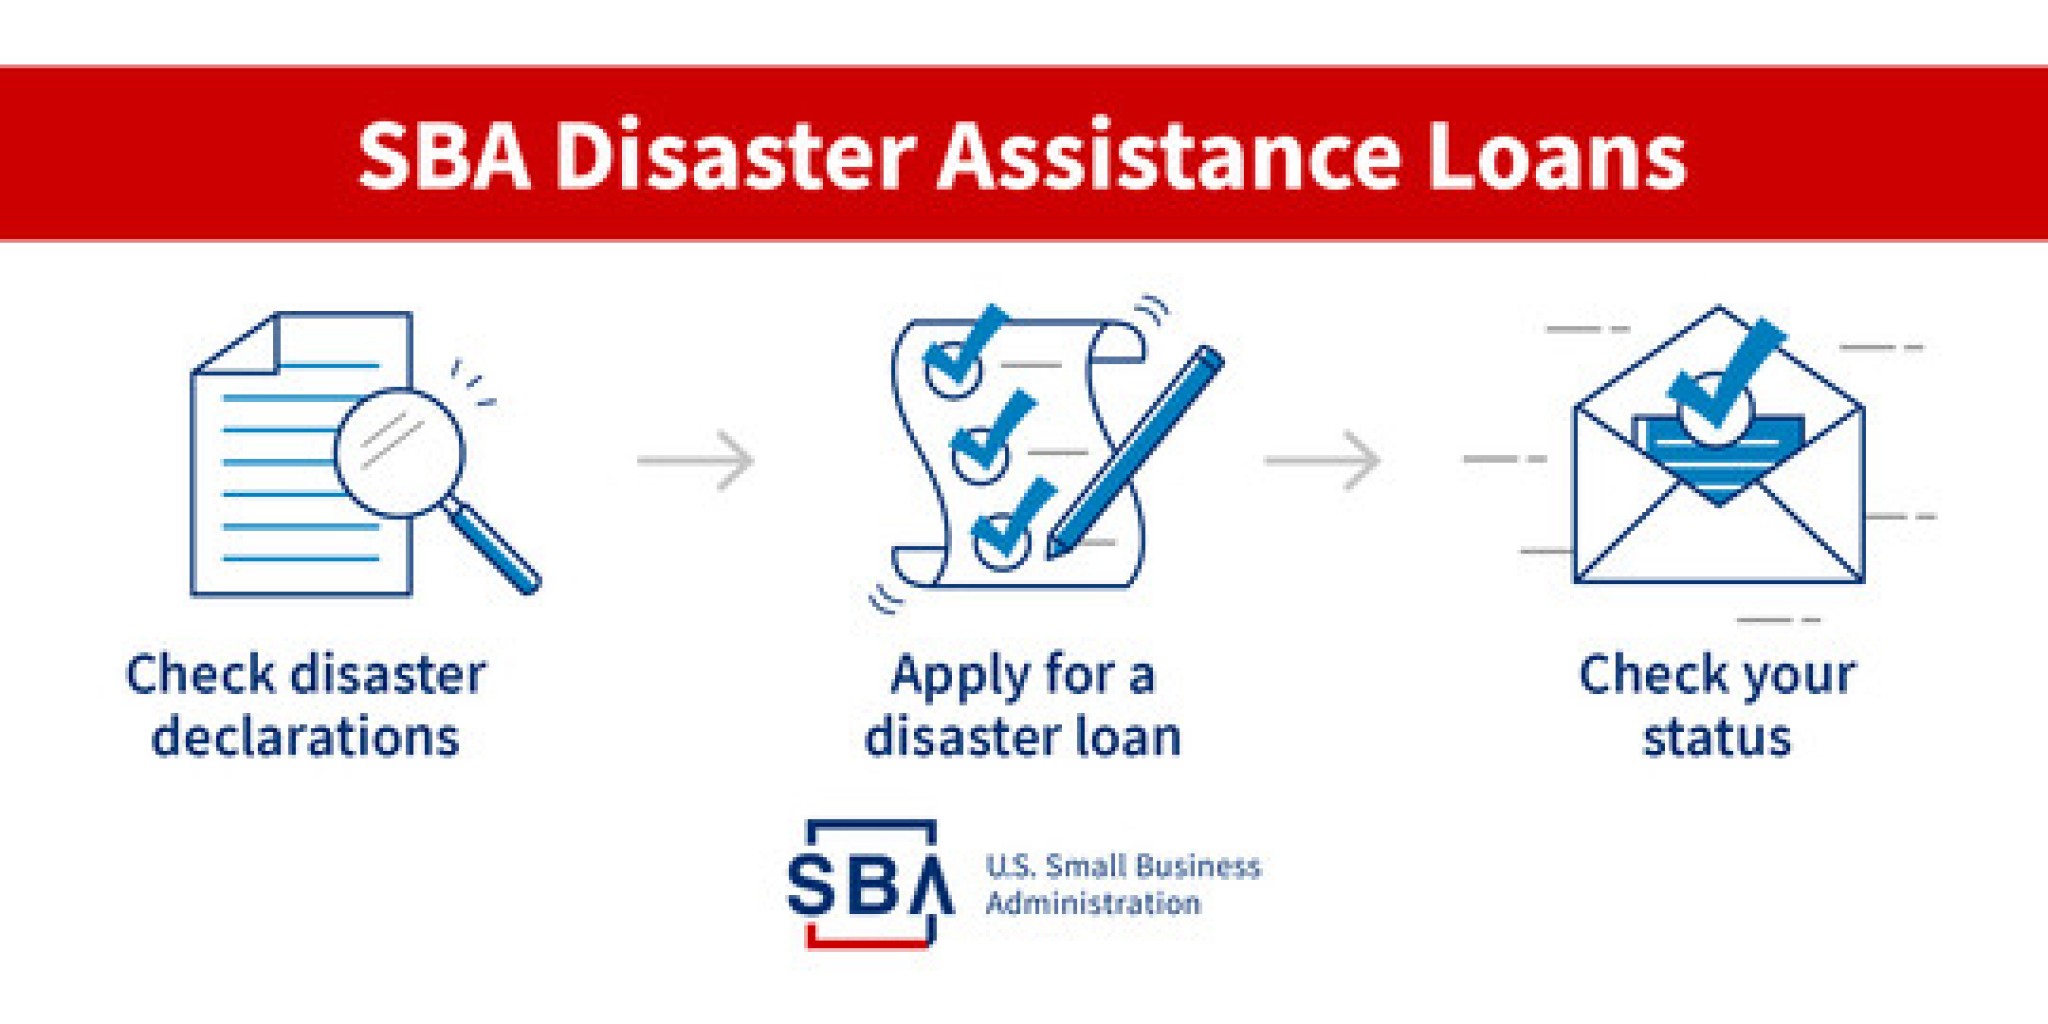 Presentar una solicitud de préstamo de SBA puede hacer disponible más asistencia por desastre